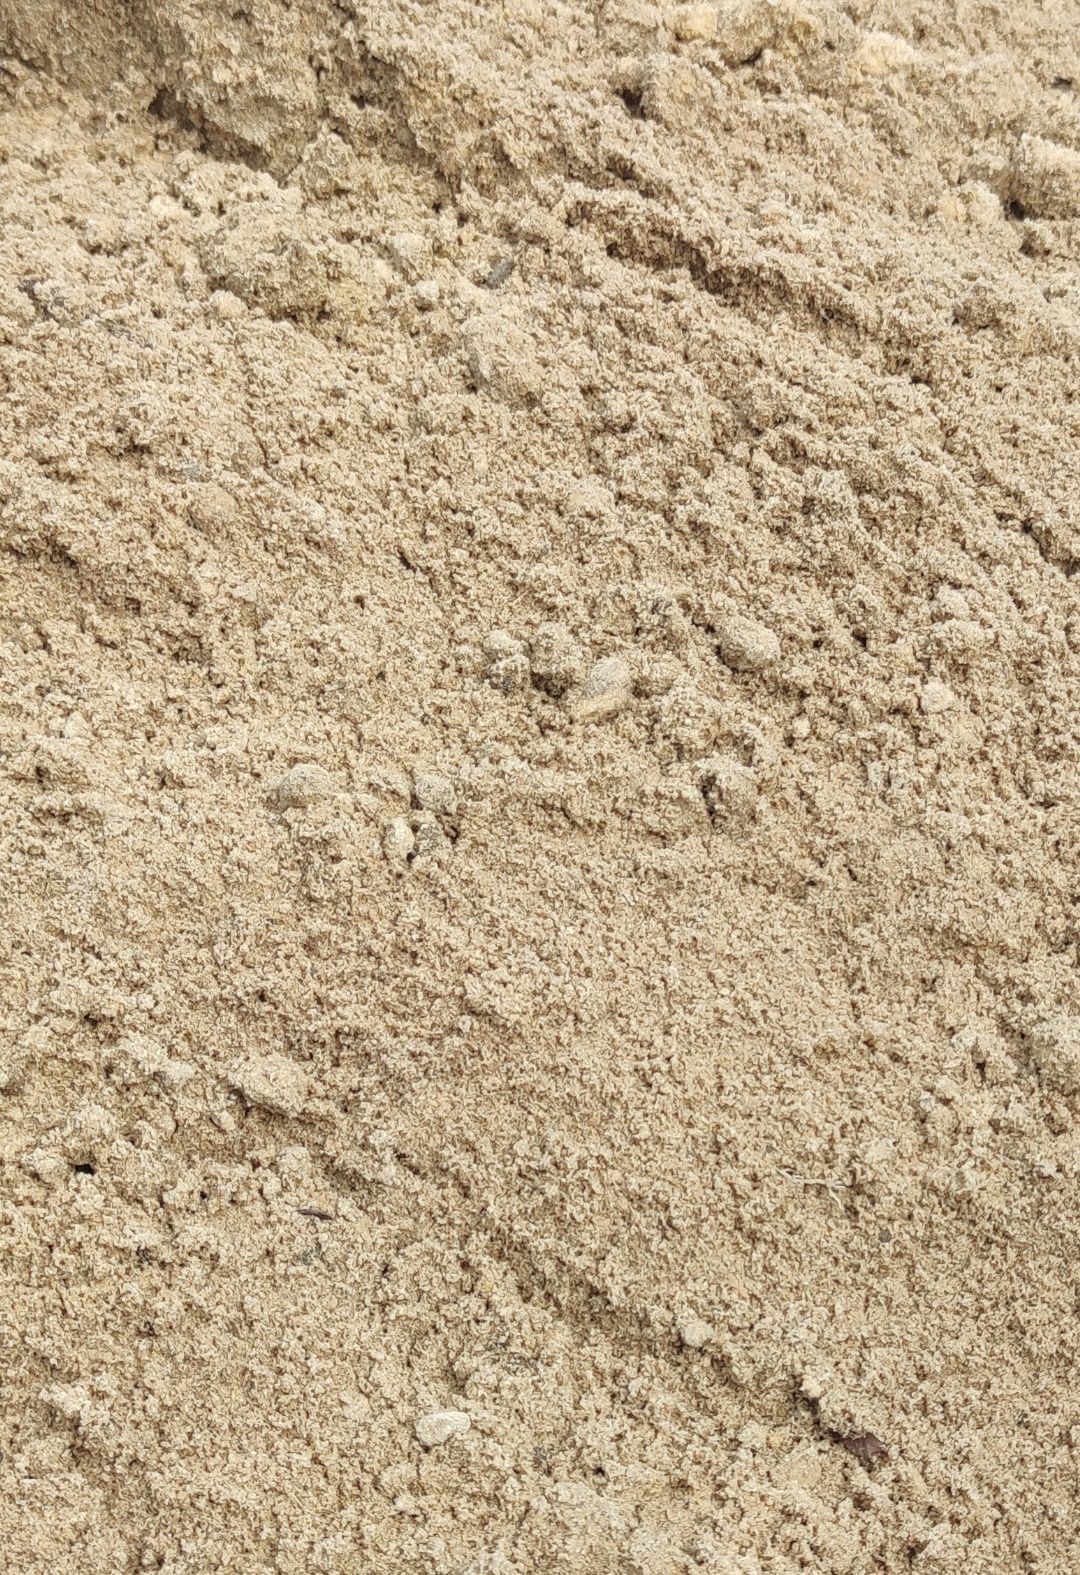 Kruszywa drogowe kliniec szary grys tłuczeń niesort piach